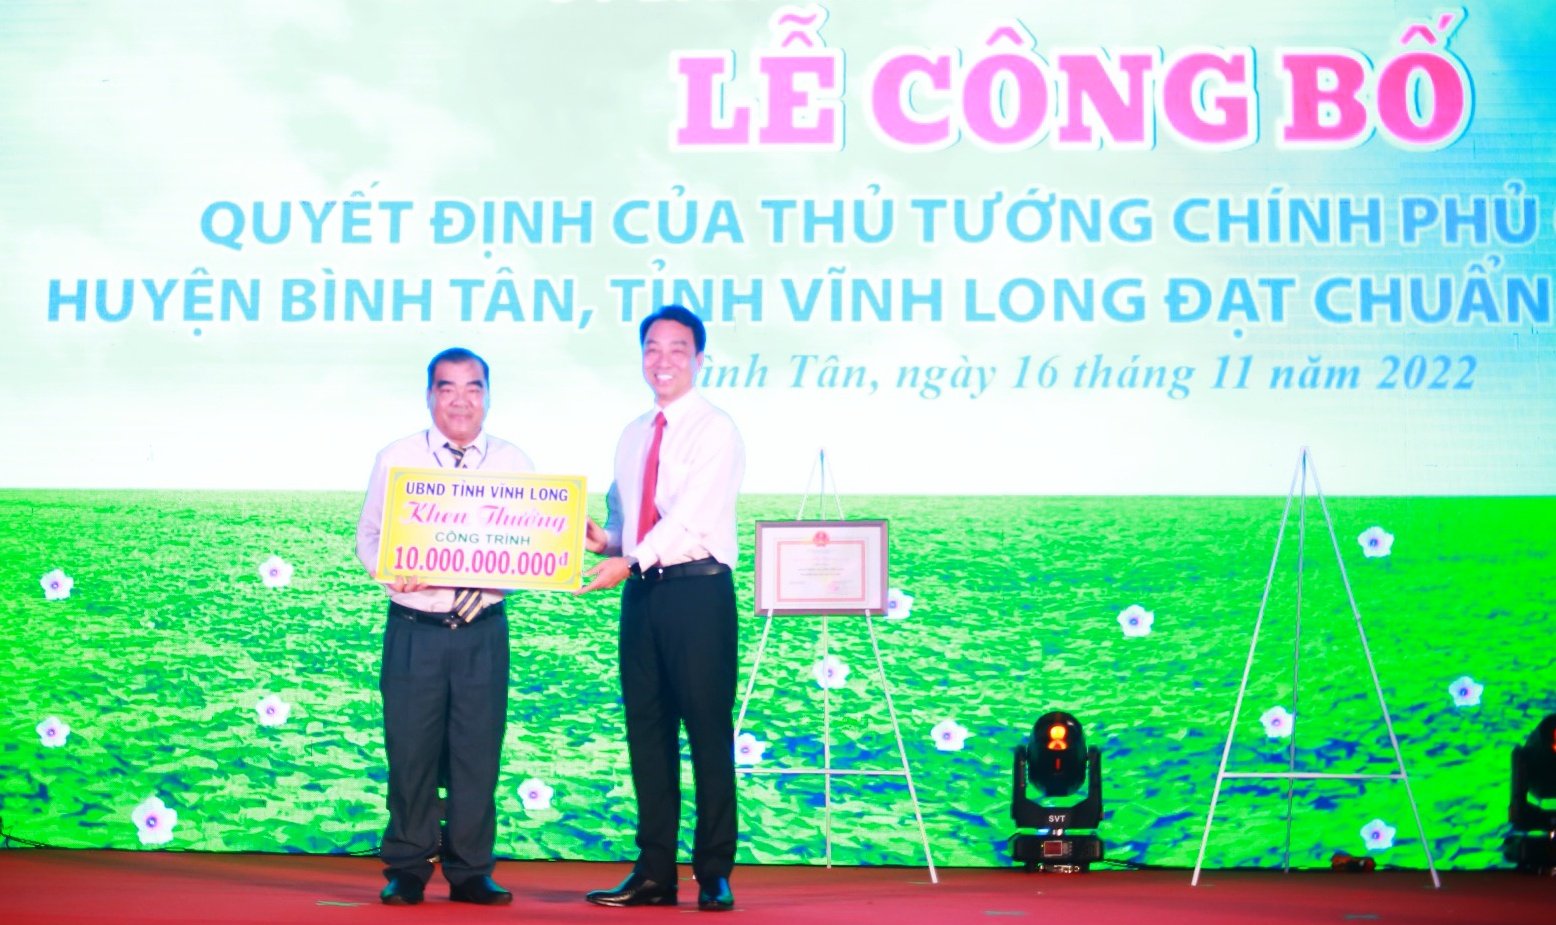 Chủ tịch UBND tỉnh - Lữ Quang Ngời  tặng thưởng công trình phúc lợi xã hội trị giá 10 tỷ đồng cho huyện Bình Tân đạt chuẩn NTM năm 2020 từ nguồn vốn xây dựng cơ bản của tỉnh.